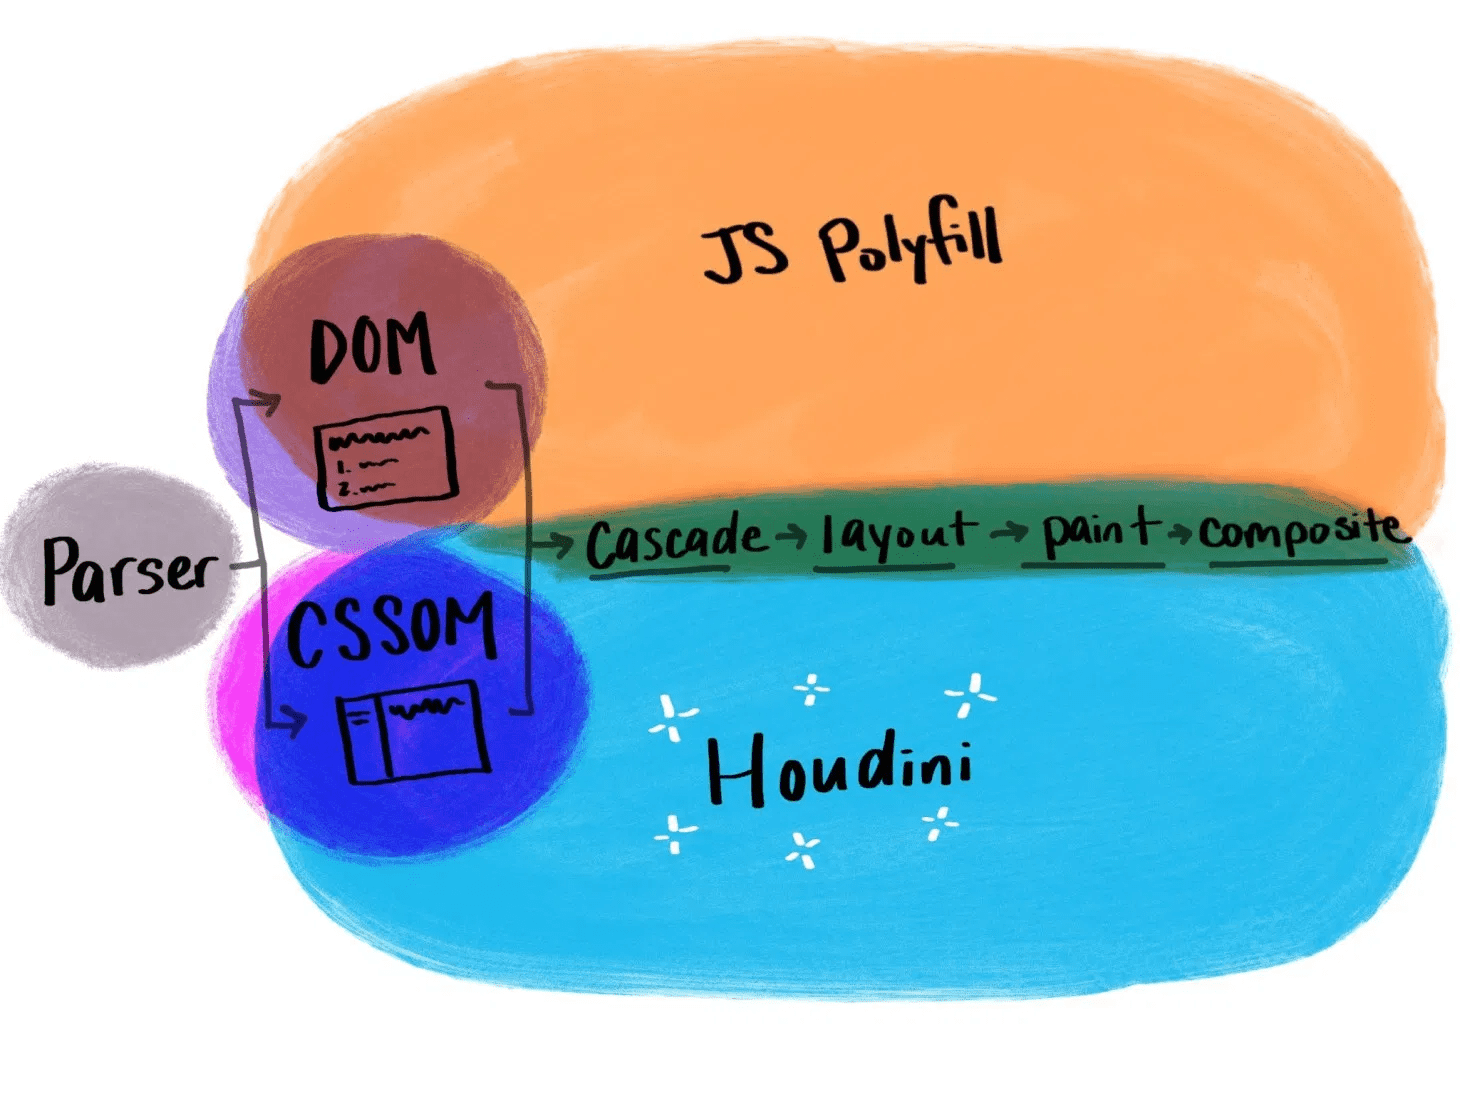 इलस्ट्रेशन में, JavaScript के पारंपरिक पॉलीफ़िल की तुलना में हुडीनी के काम करने के तरीके को दिखाया गया है.